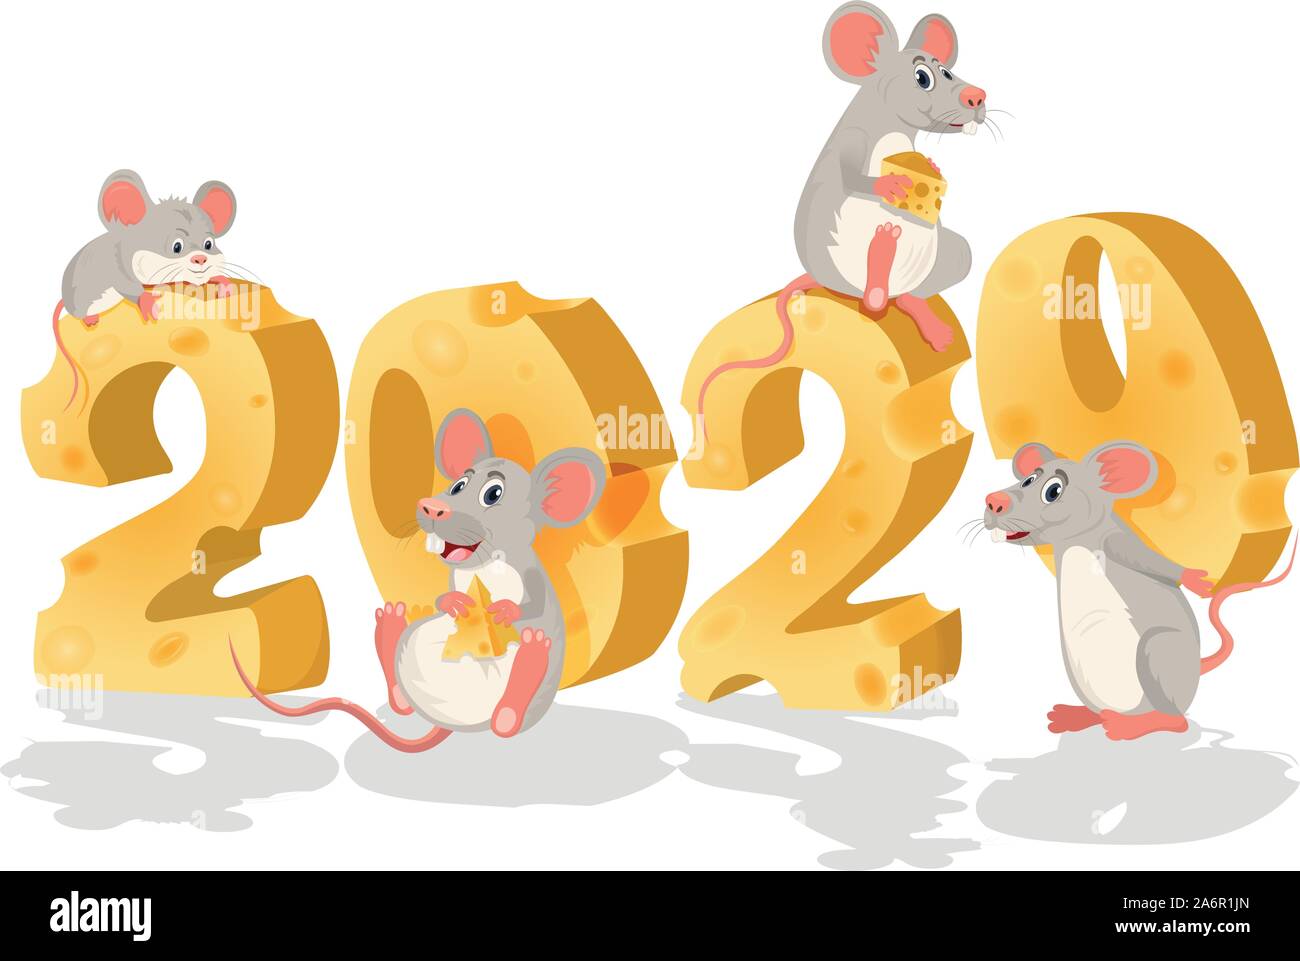 Vetores de Jogo De Selos Chineses Do Tag Com Rato No Fundo De Papel  Ilustração Do Vetor Tradução De Título Feliz Ano Novo Símbolo Em Selo  Vermelho Significa Zodiac Assinar Rat e